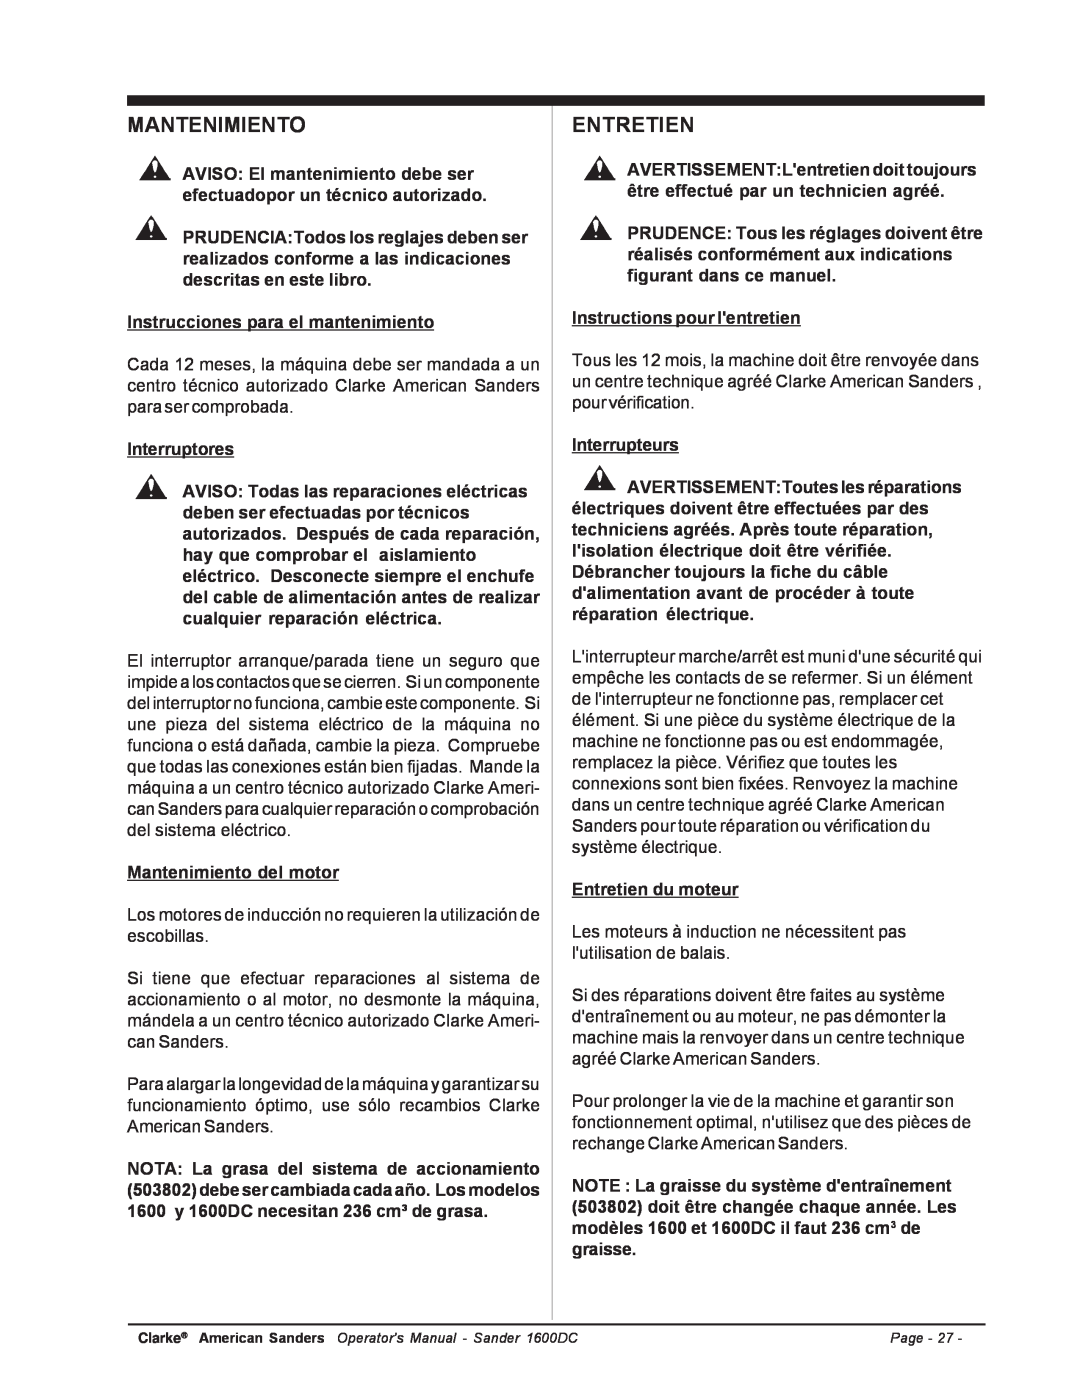 Nilfisk-ALTO C.A.V. 15 manual Mantenimiento, Entretien 